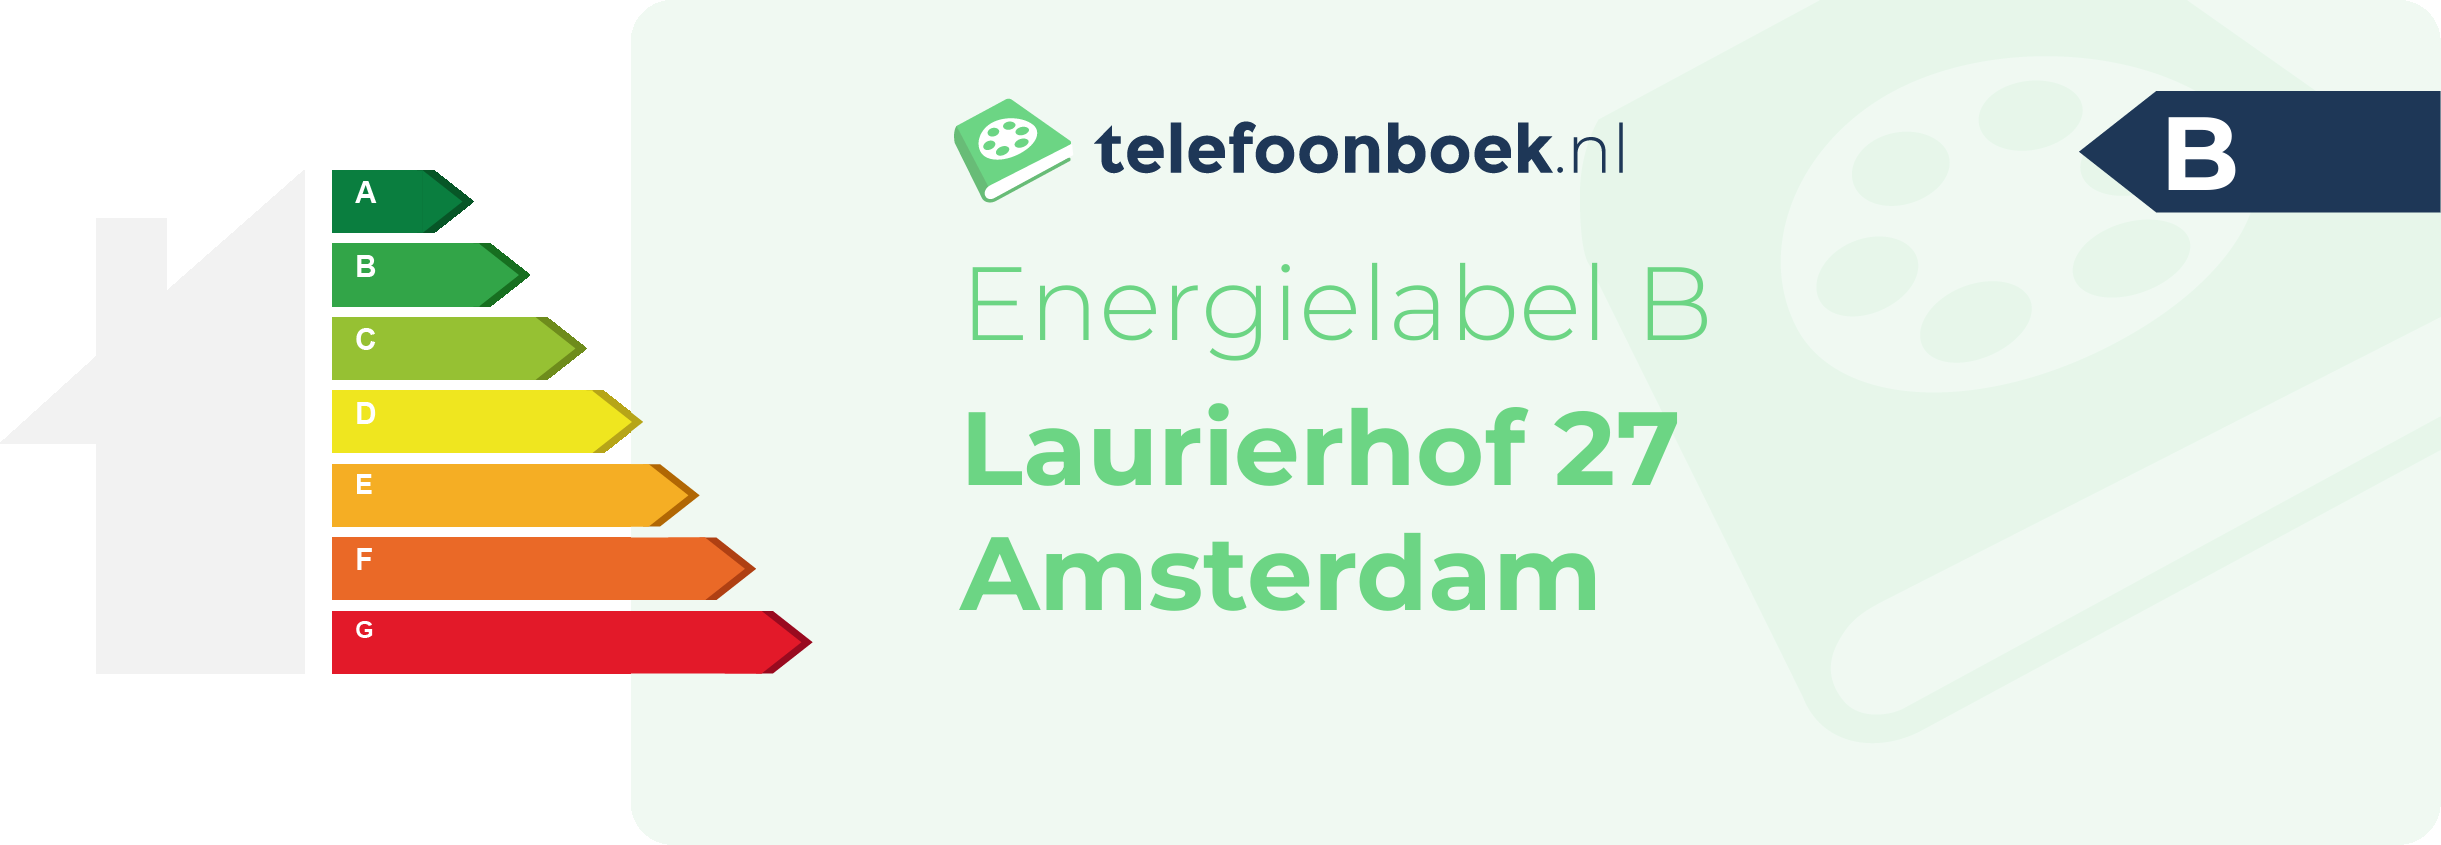 Energielabel Laurierhof 27 Amsterdam